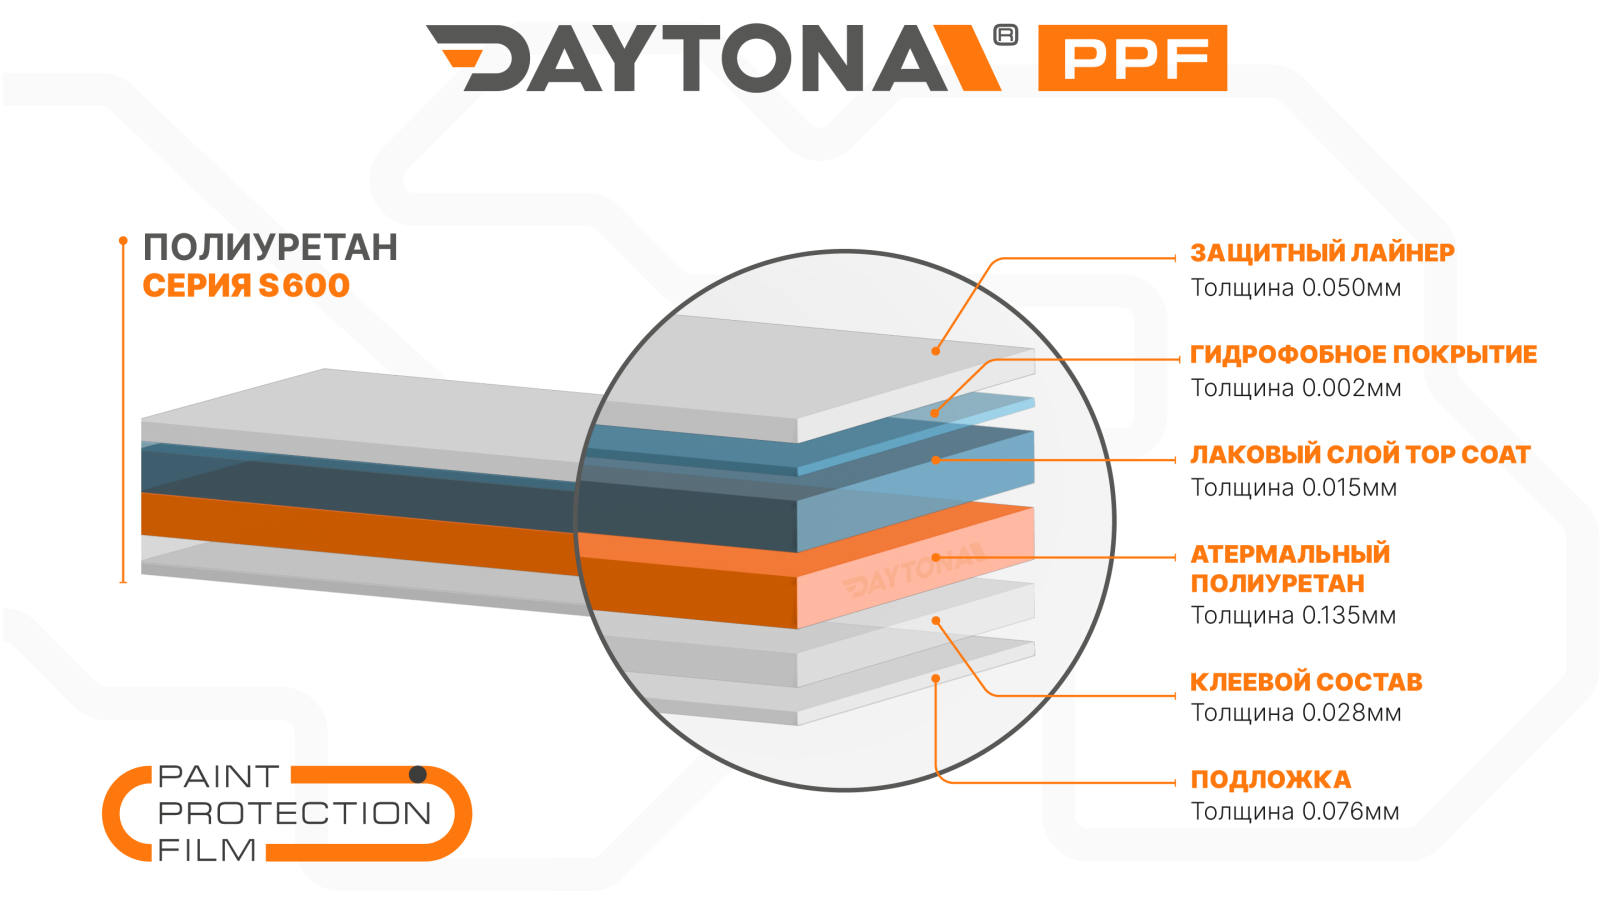 Атермальная полиуретановая пленка DAYTONA PPF S600 для панорамной крыши - 2